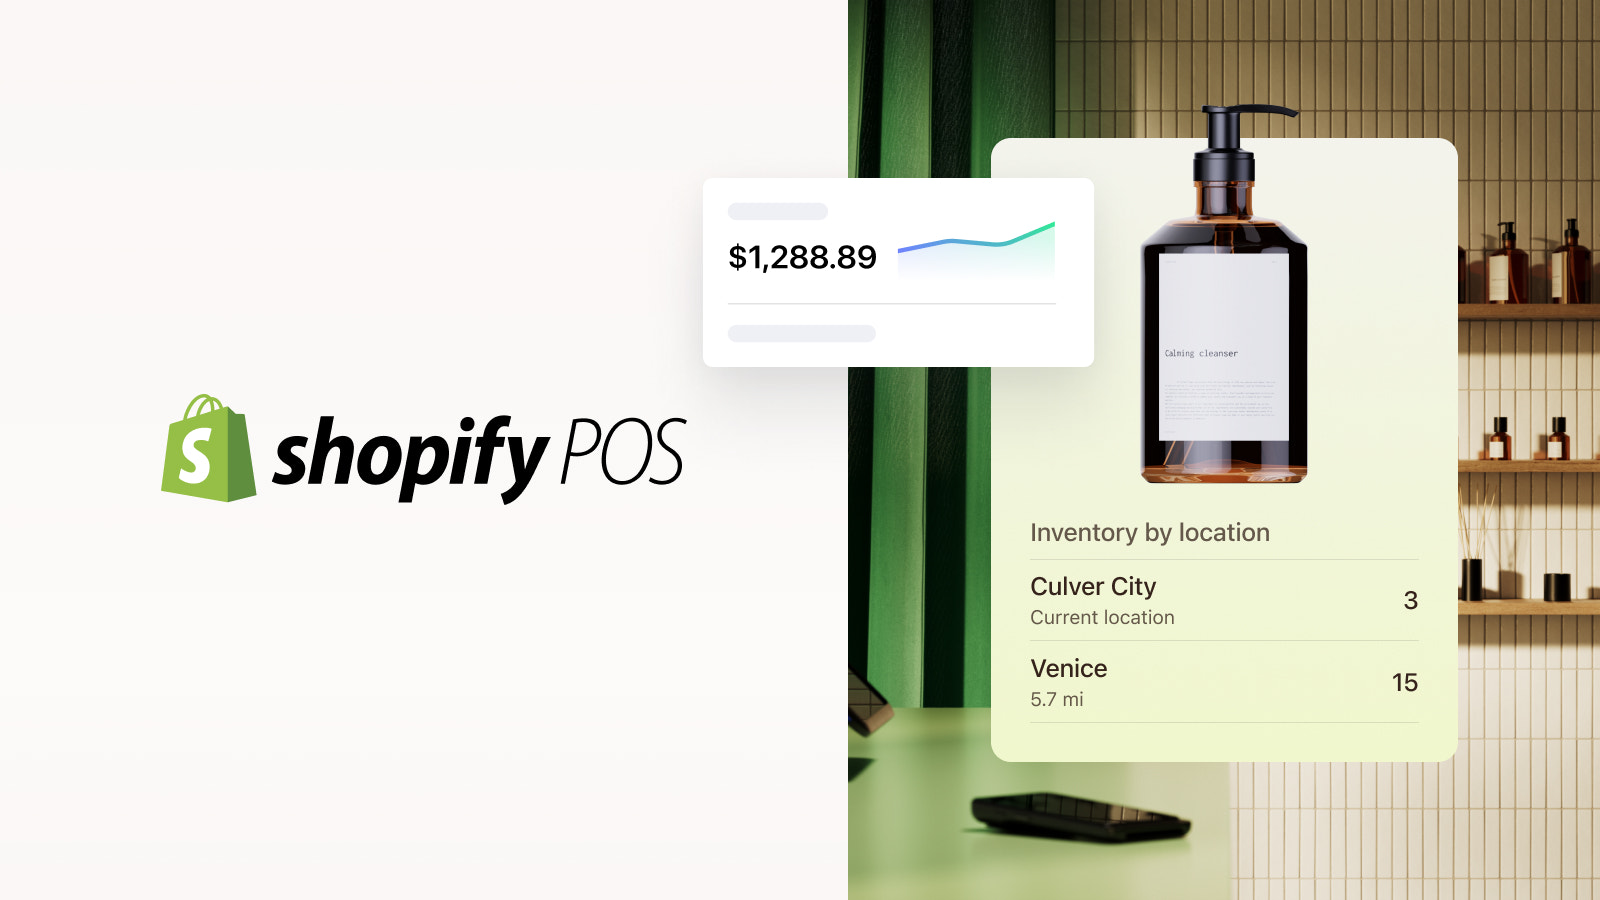  iOSおよびAndroidデバイスで利用可能なShopify POSアプリ